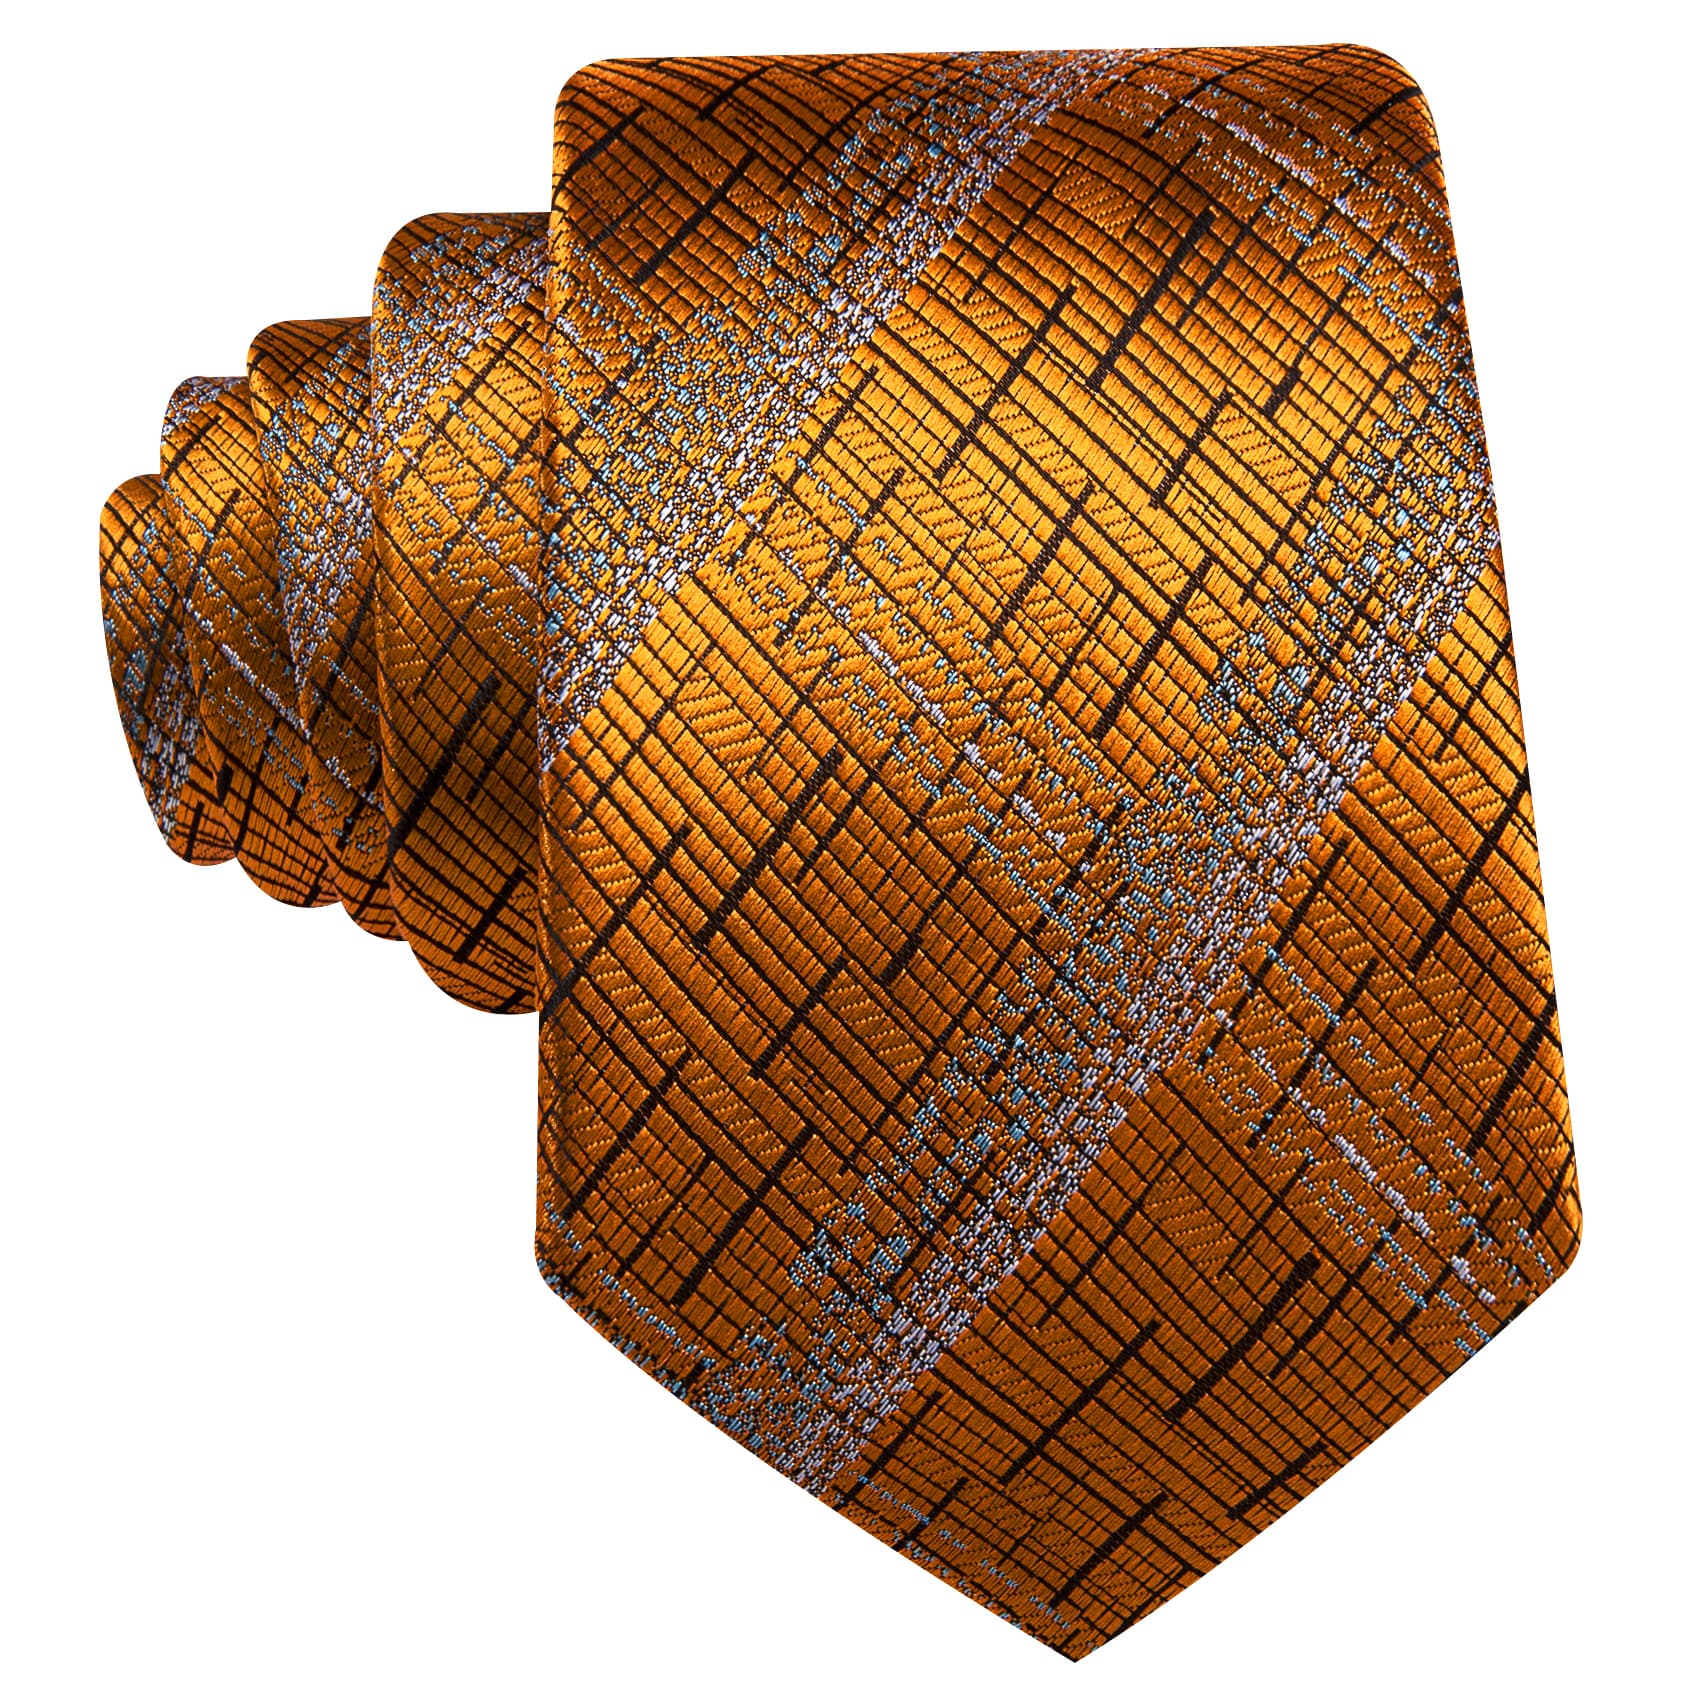 Tie Orange Black Silver Necktie Hanky Cufflinks Set